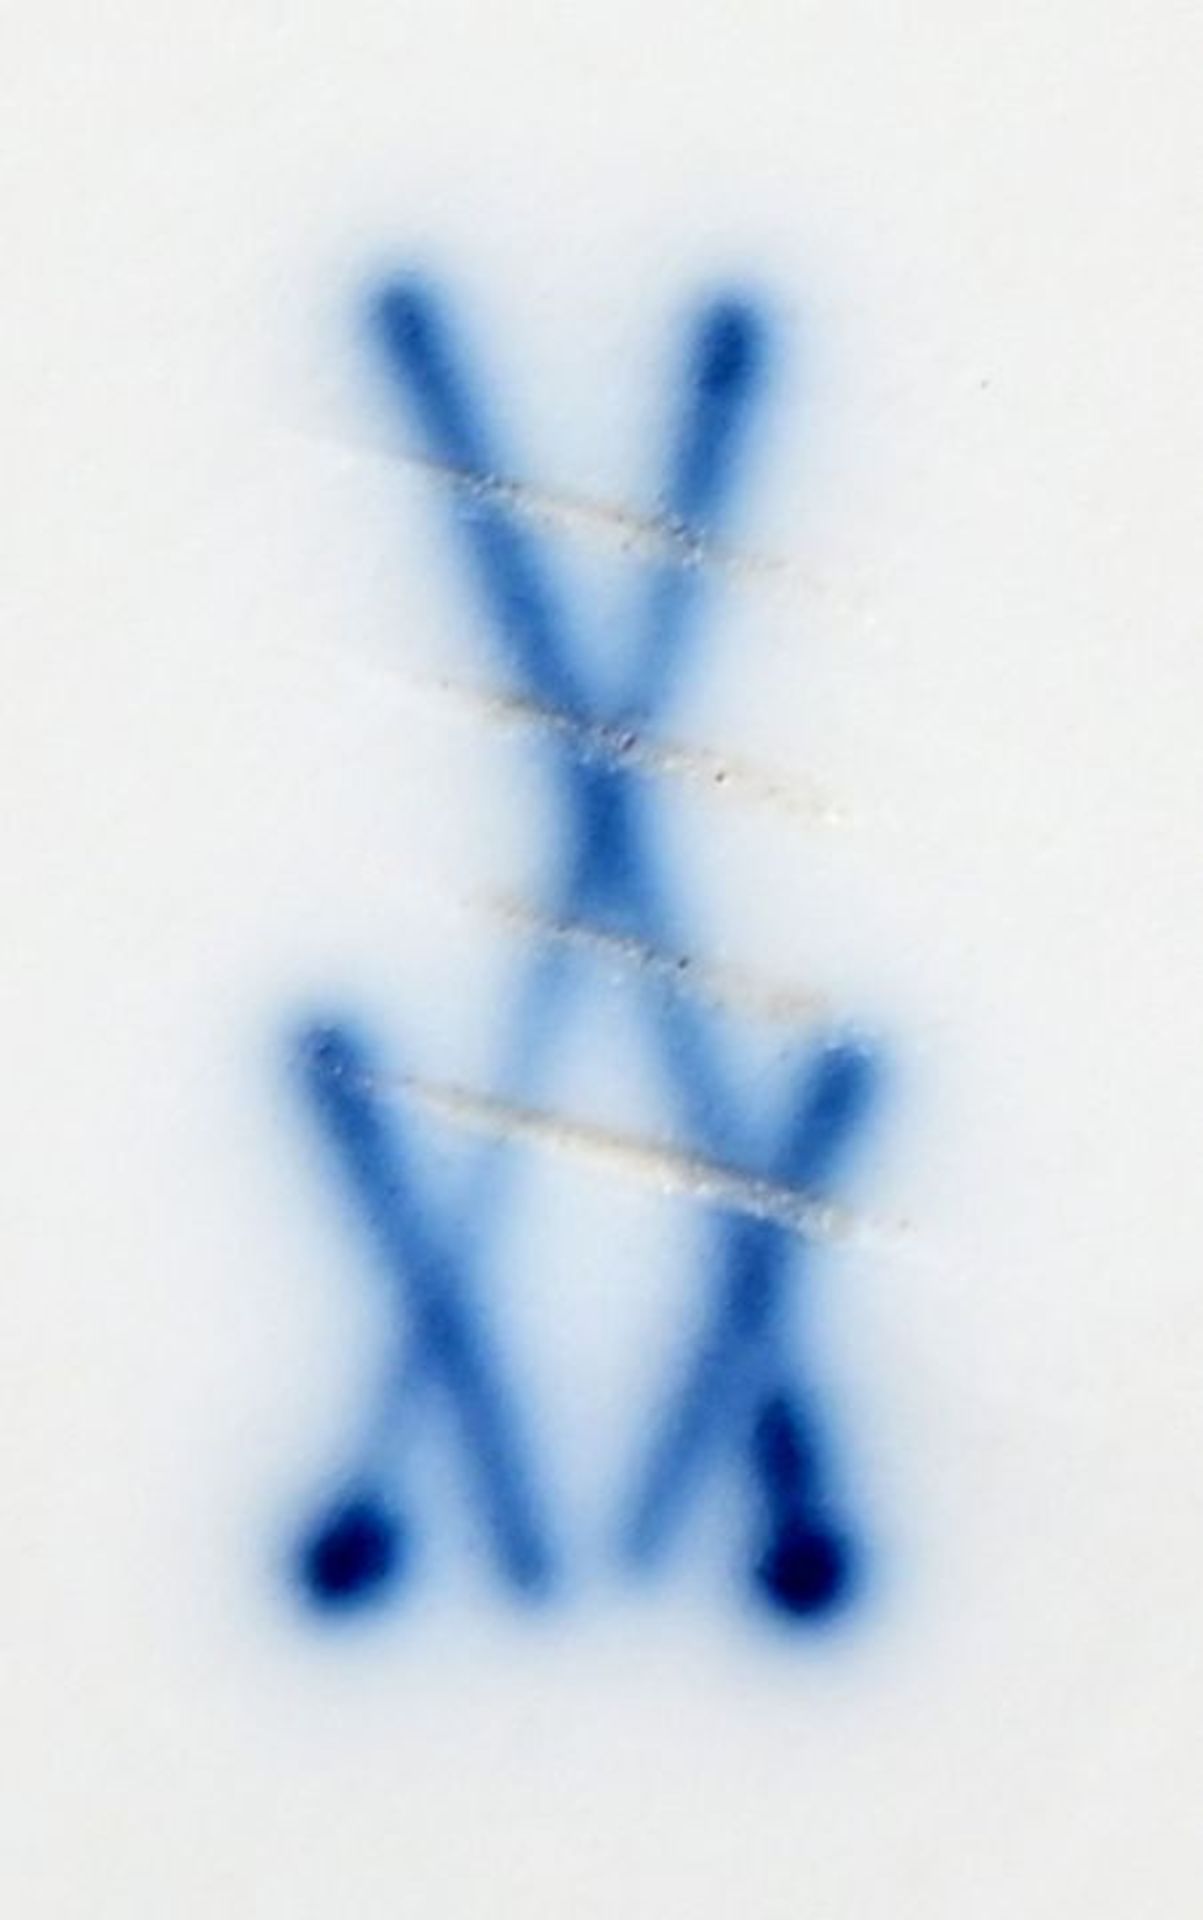 Zwiebelmuster/ blue onion pattern - Bild 3 aus 3